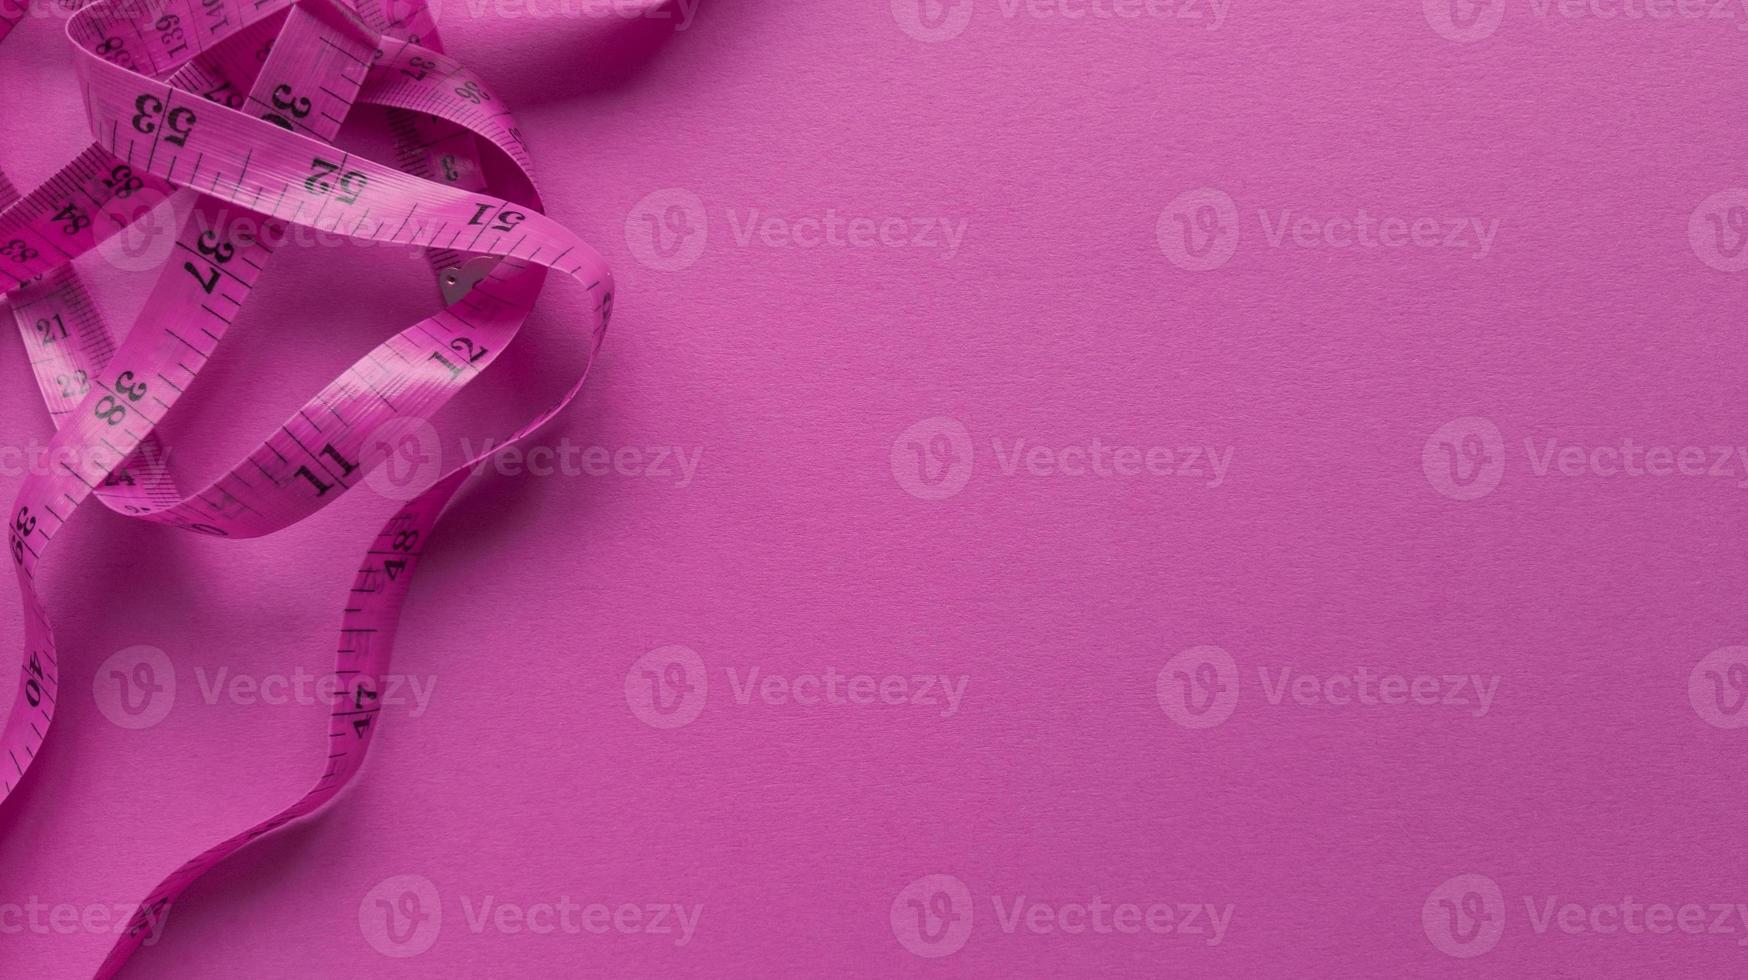 rosa centimeter på rosa bakgrund enkel platt låg med pastell textur fitness koncept stock photo foto